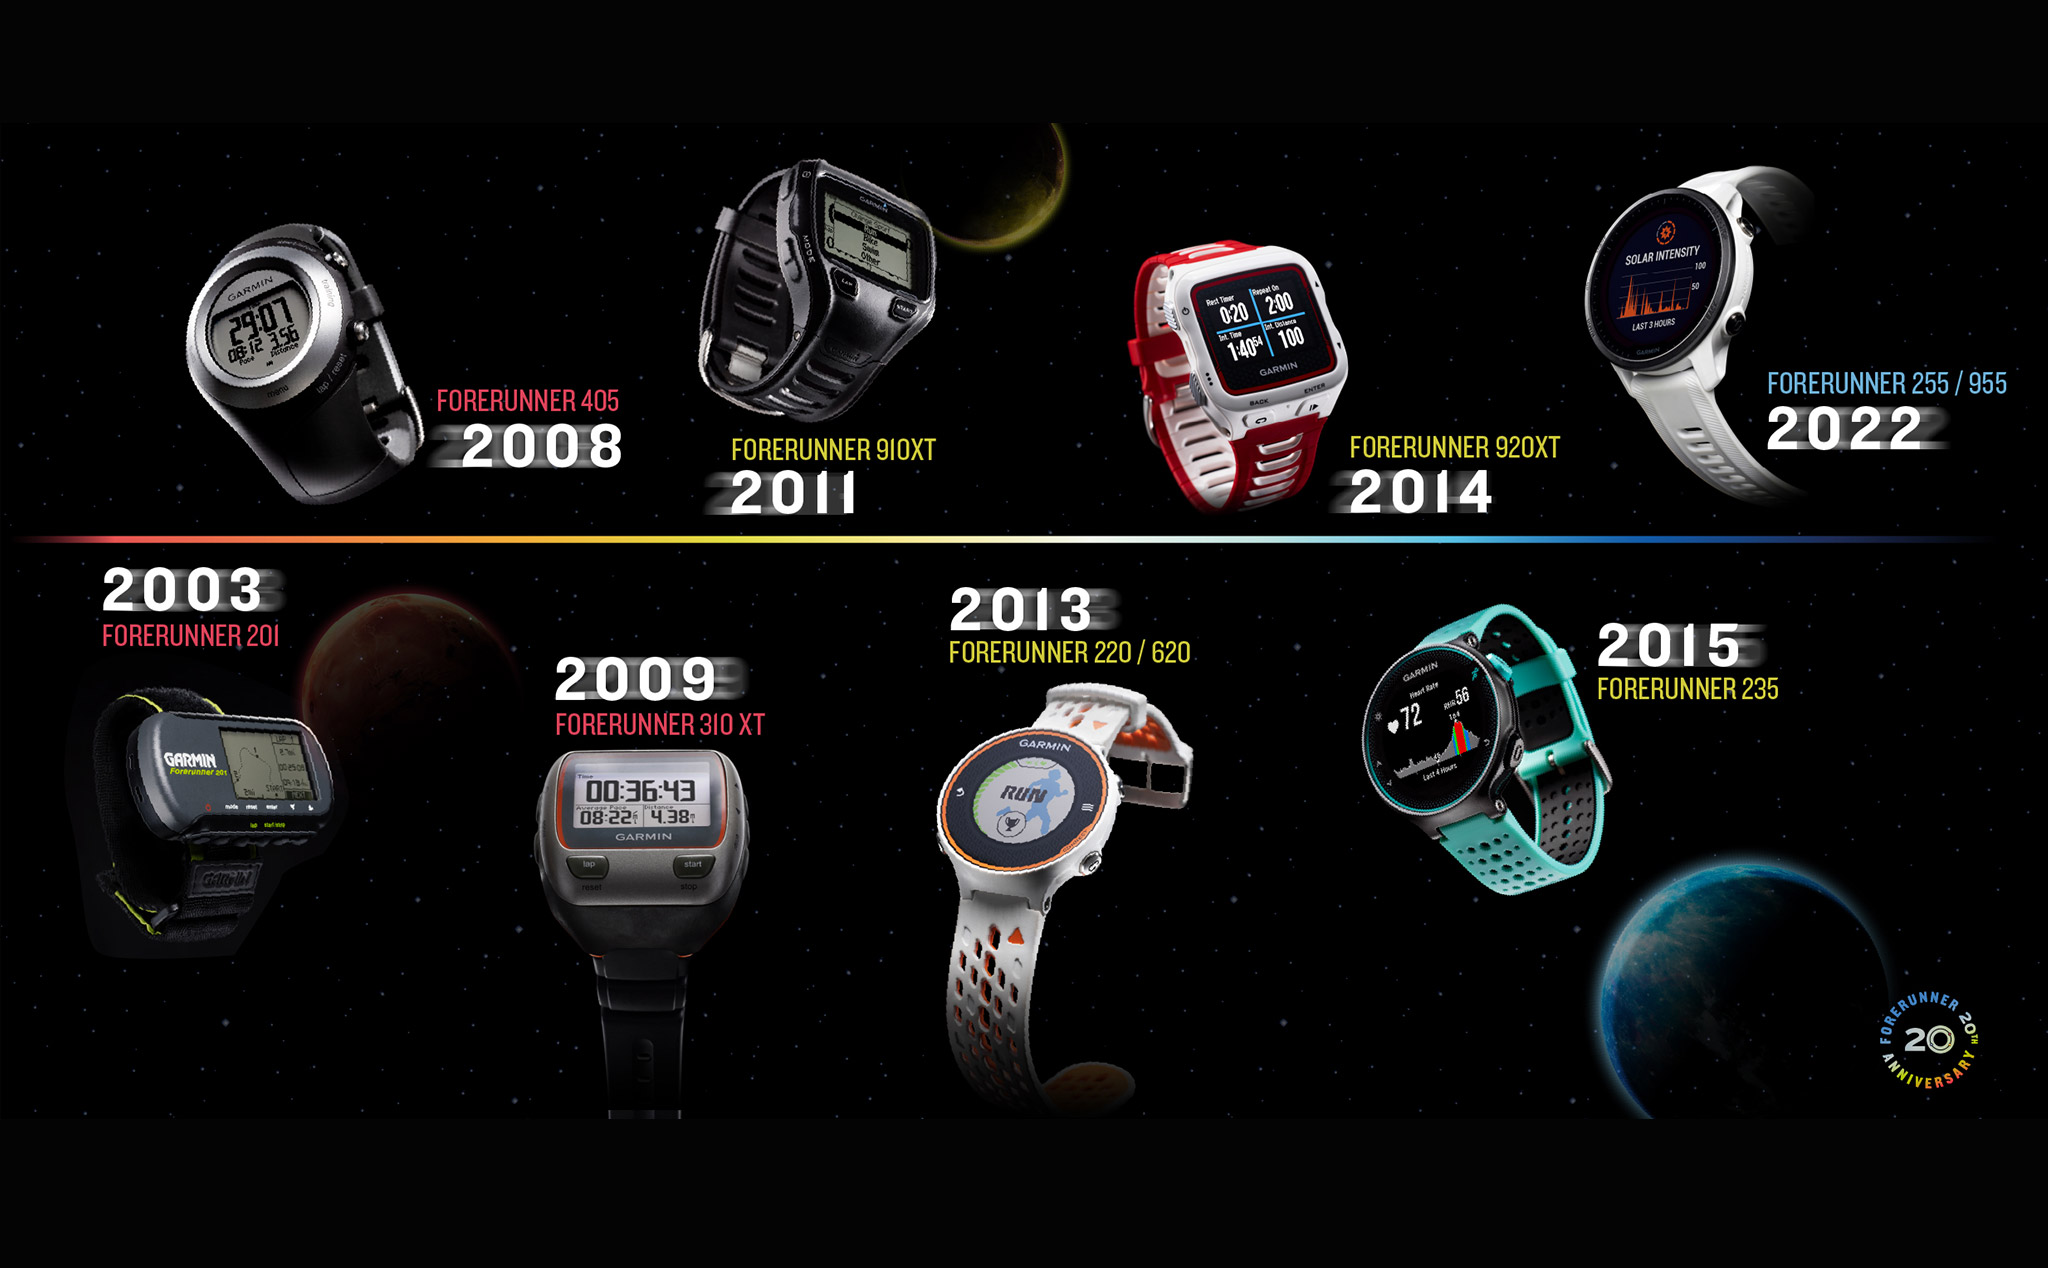 Đã 20 năm từ chiếc Garmin Forerunner đầu tiên, cũng là đồng hồ GPS đầu tiên trên thế giới